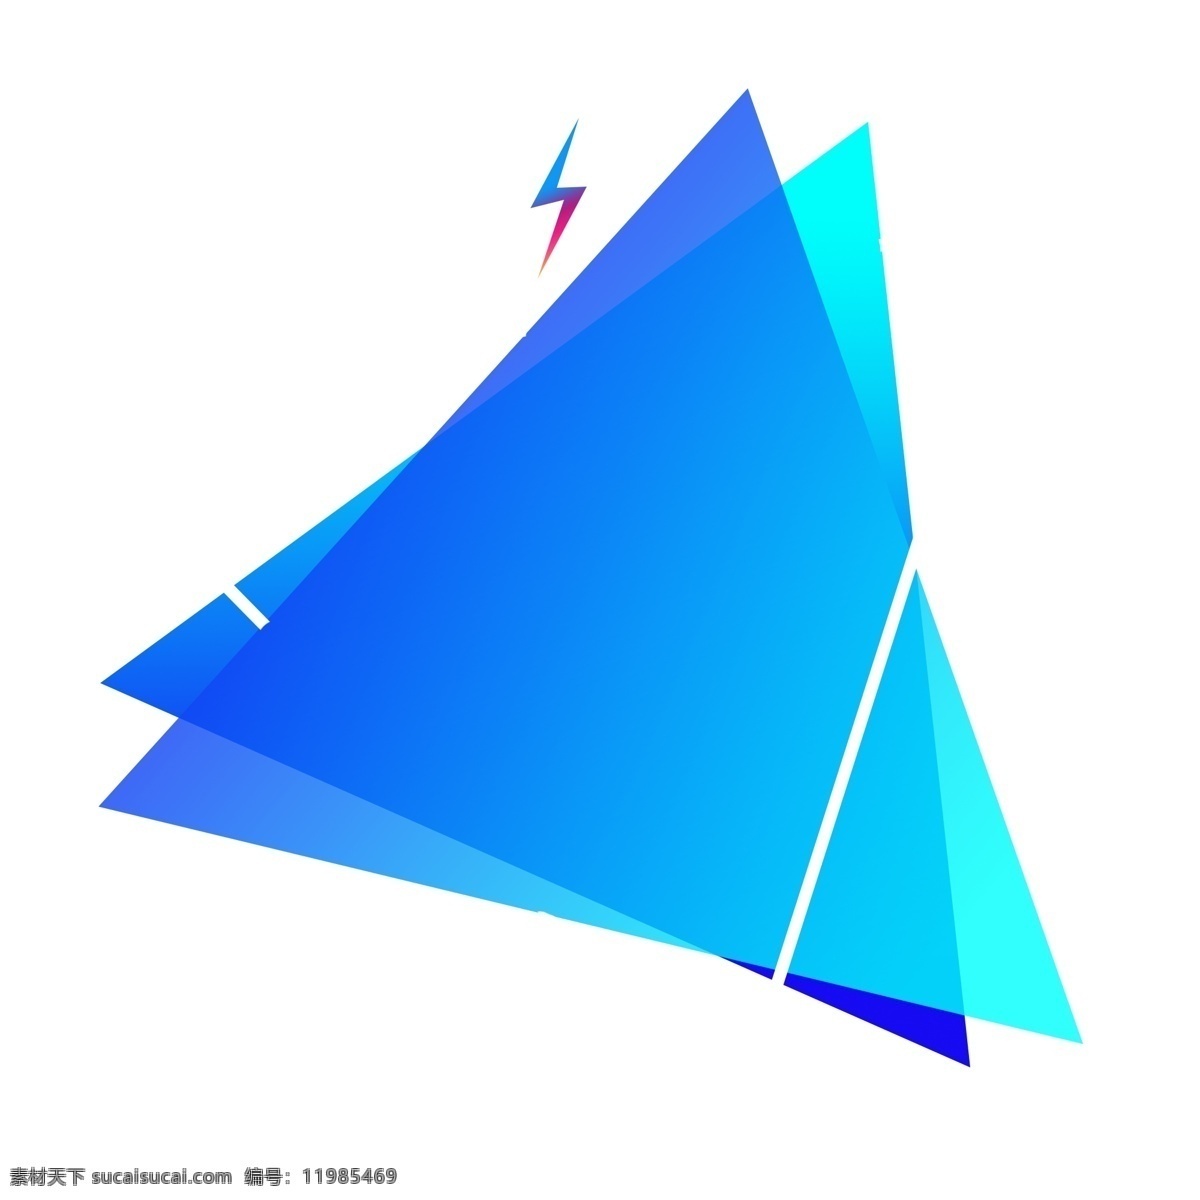 蓝色 重叠 三角形 渐变 纹理 边框 商用 浅蓝色 可商用 简约 形状 装饰